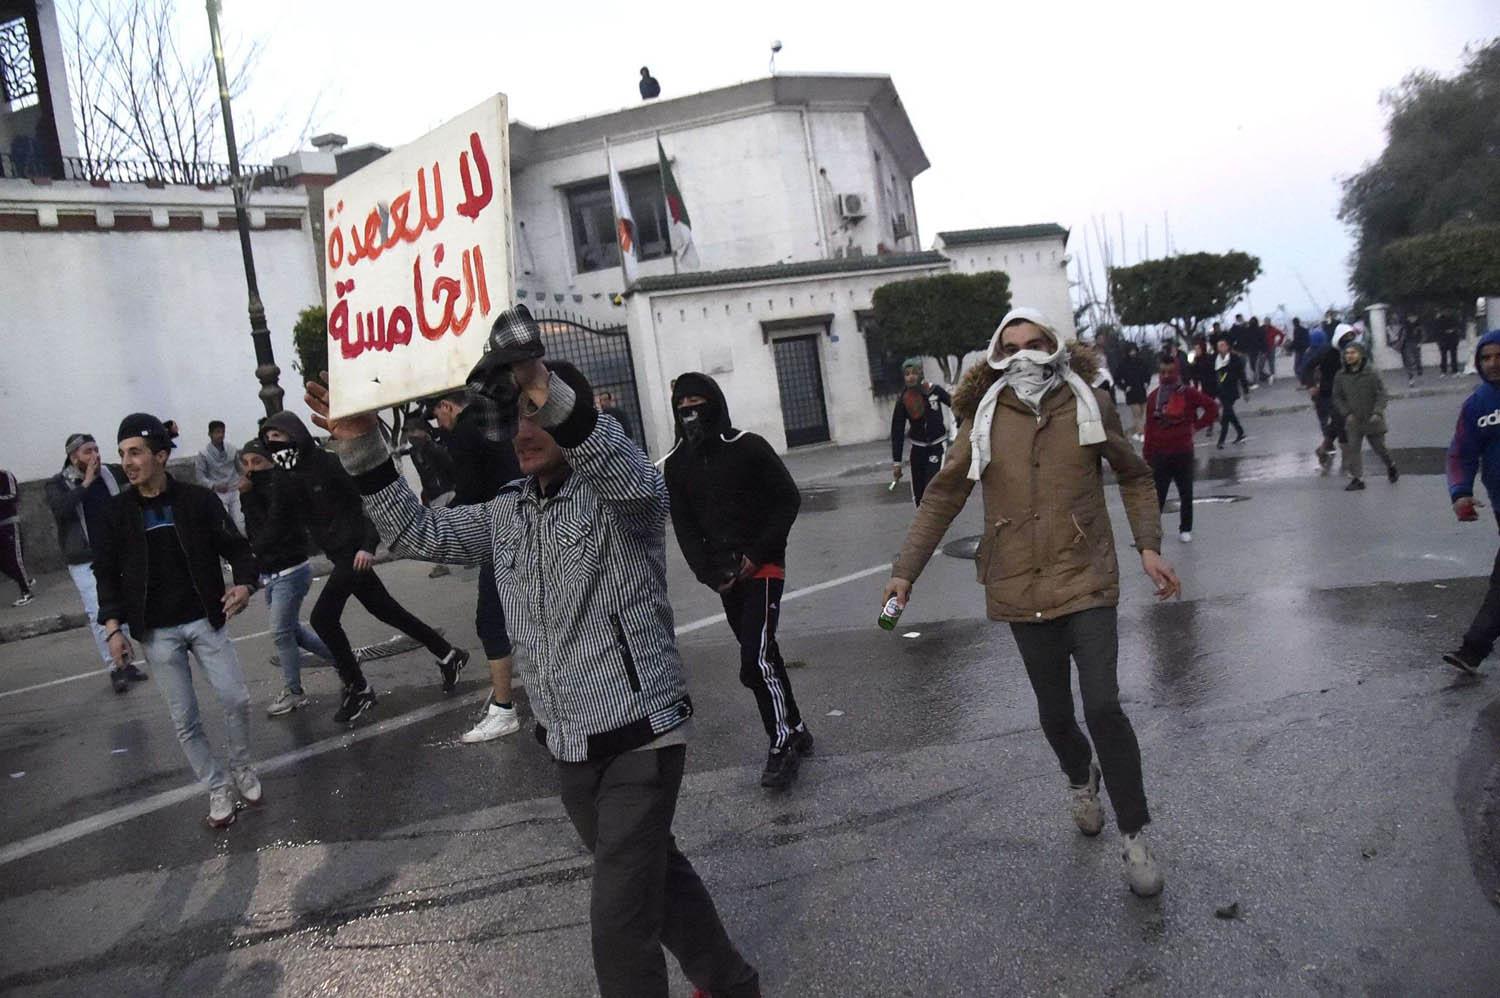 جزائريون يتظاهرون ضد ترشيح الرئيس الجزائري عبدالعزيز بوتفليقة لعهدة خامسة